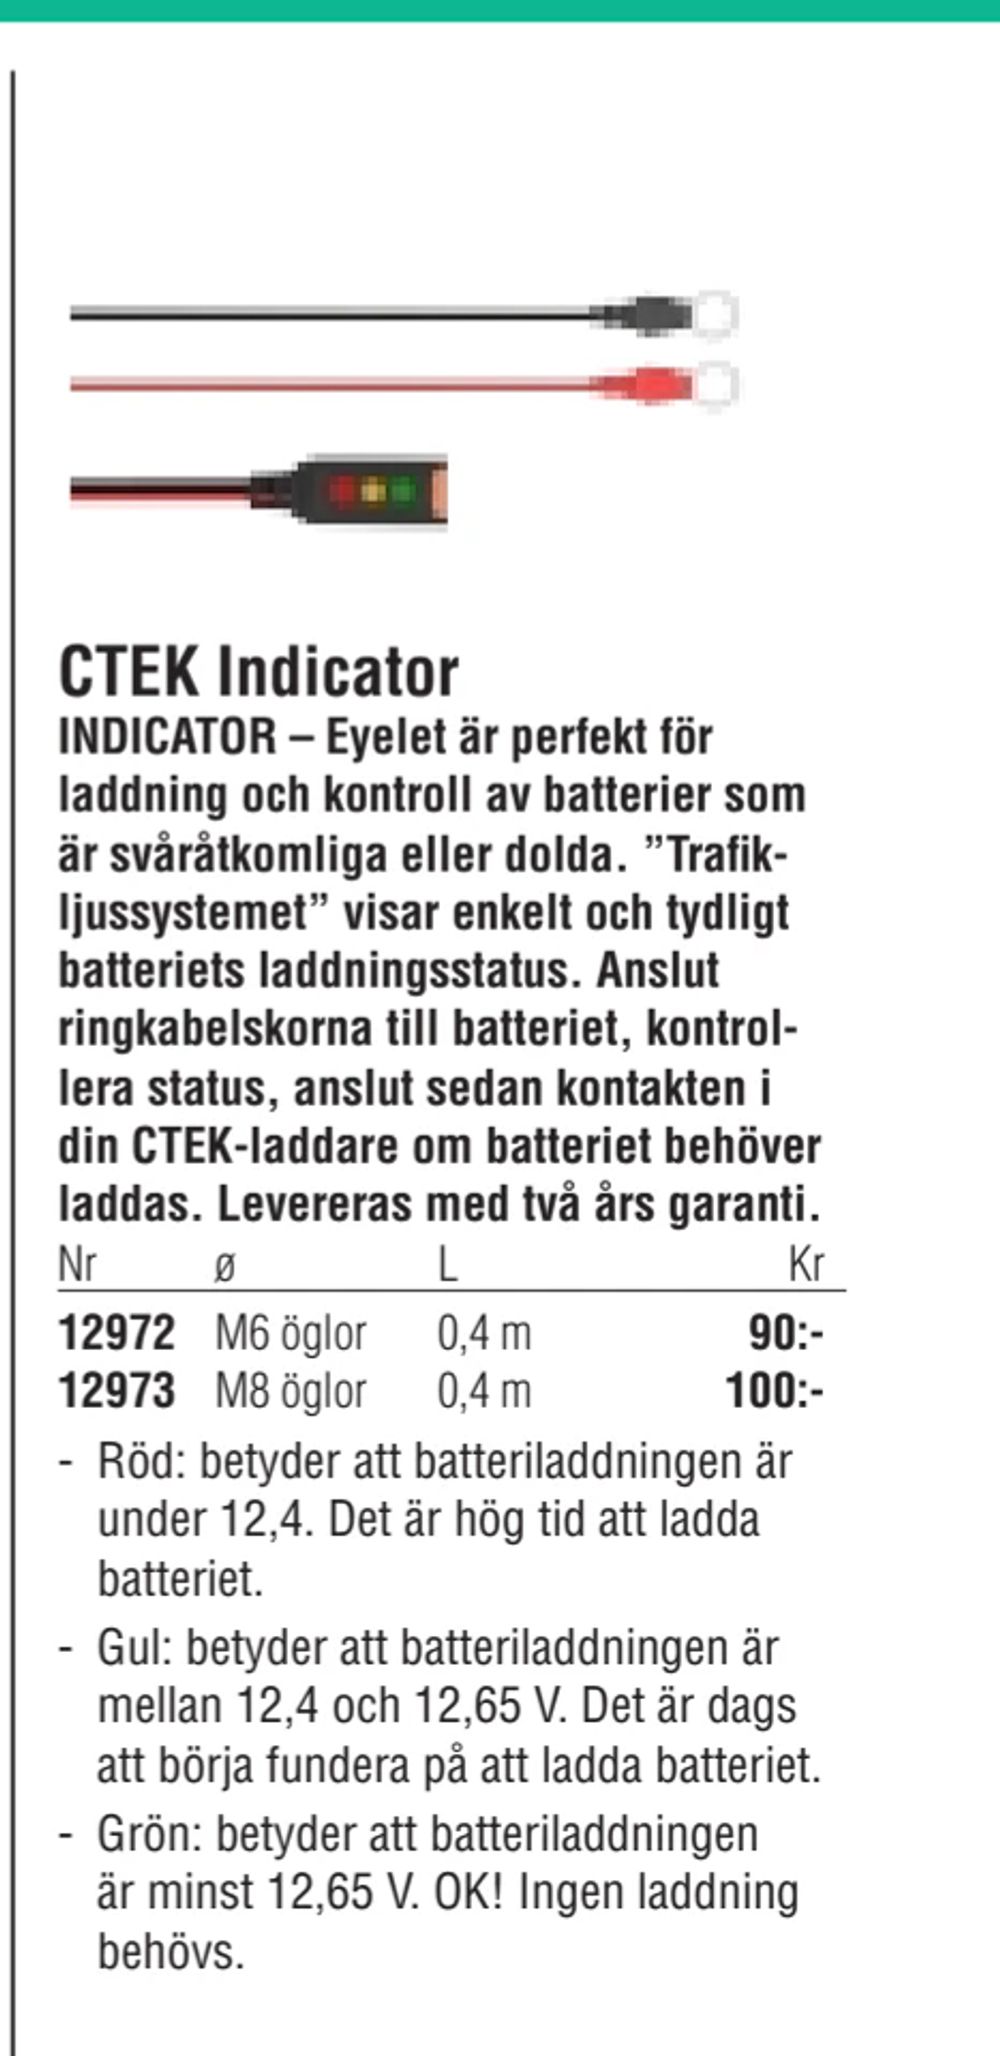 Erbjudanden på CTEK Indicator från Erlandsons Brygga för 90 kr